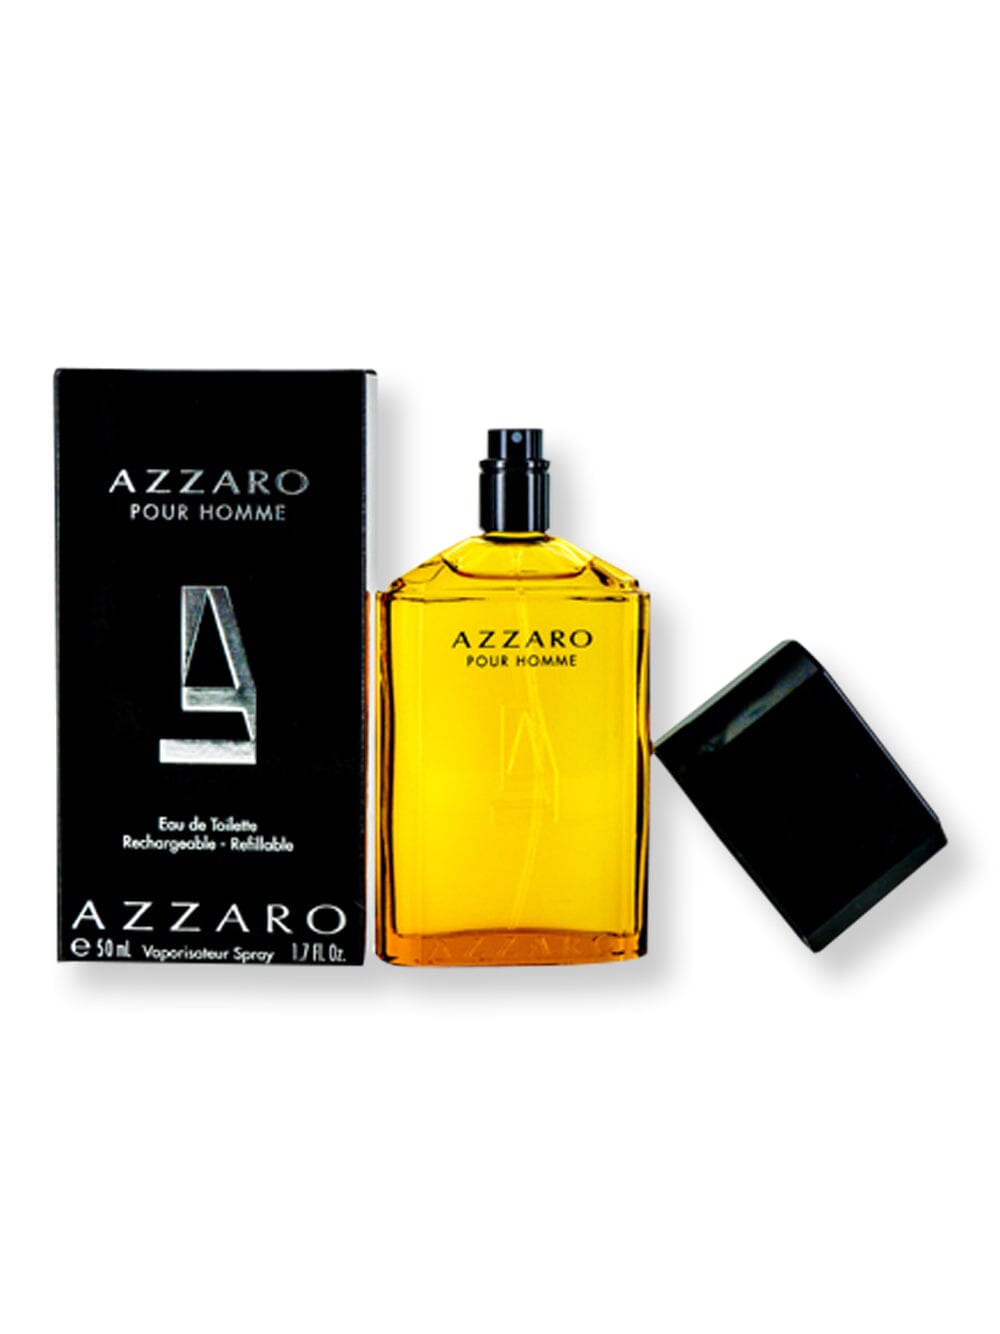 Azzaro Azzaro Men EDT Spray 1.7 oz Perfume 